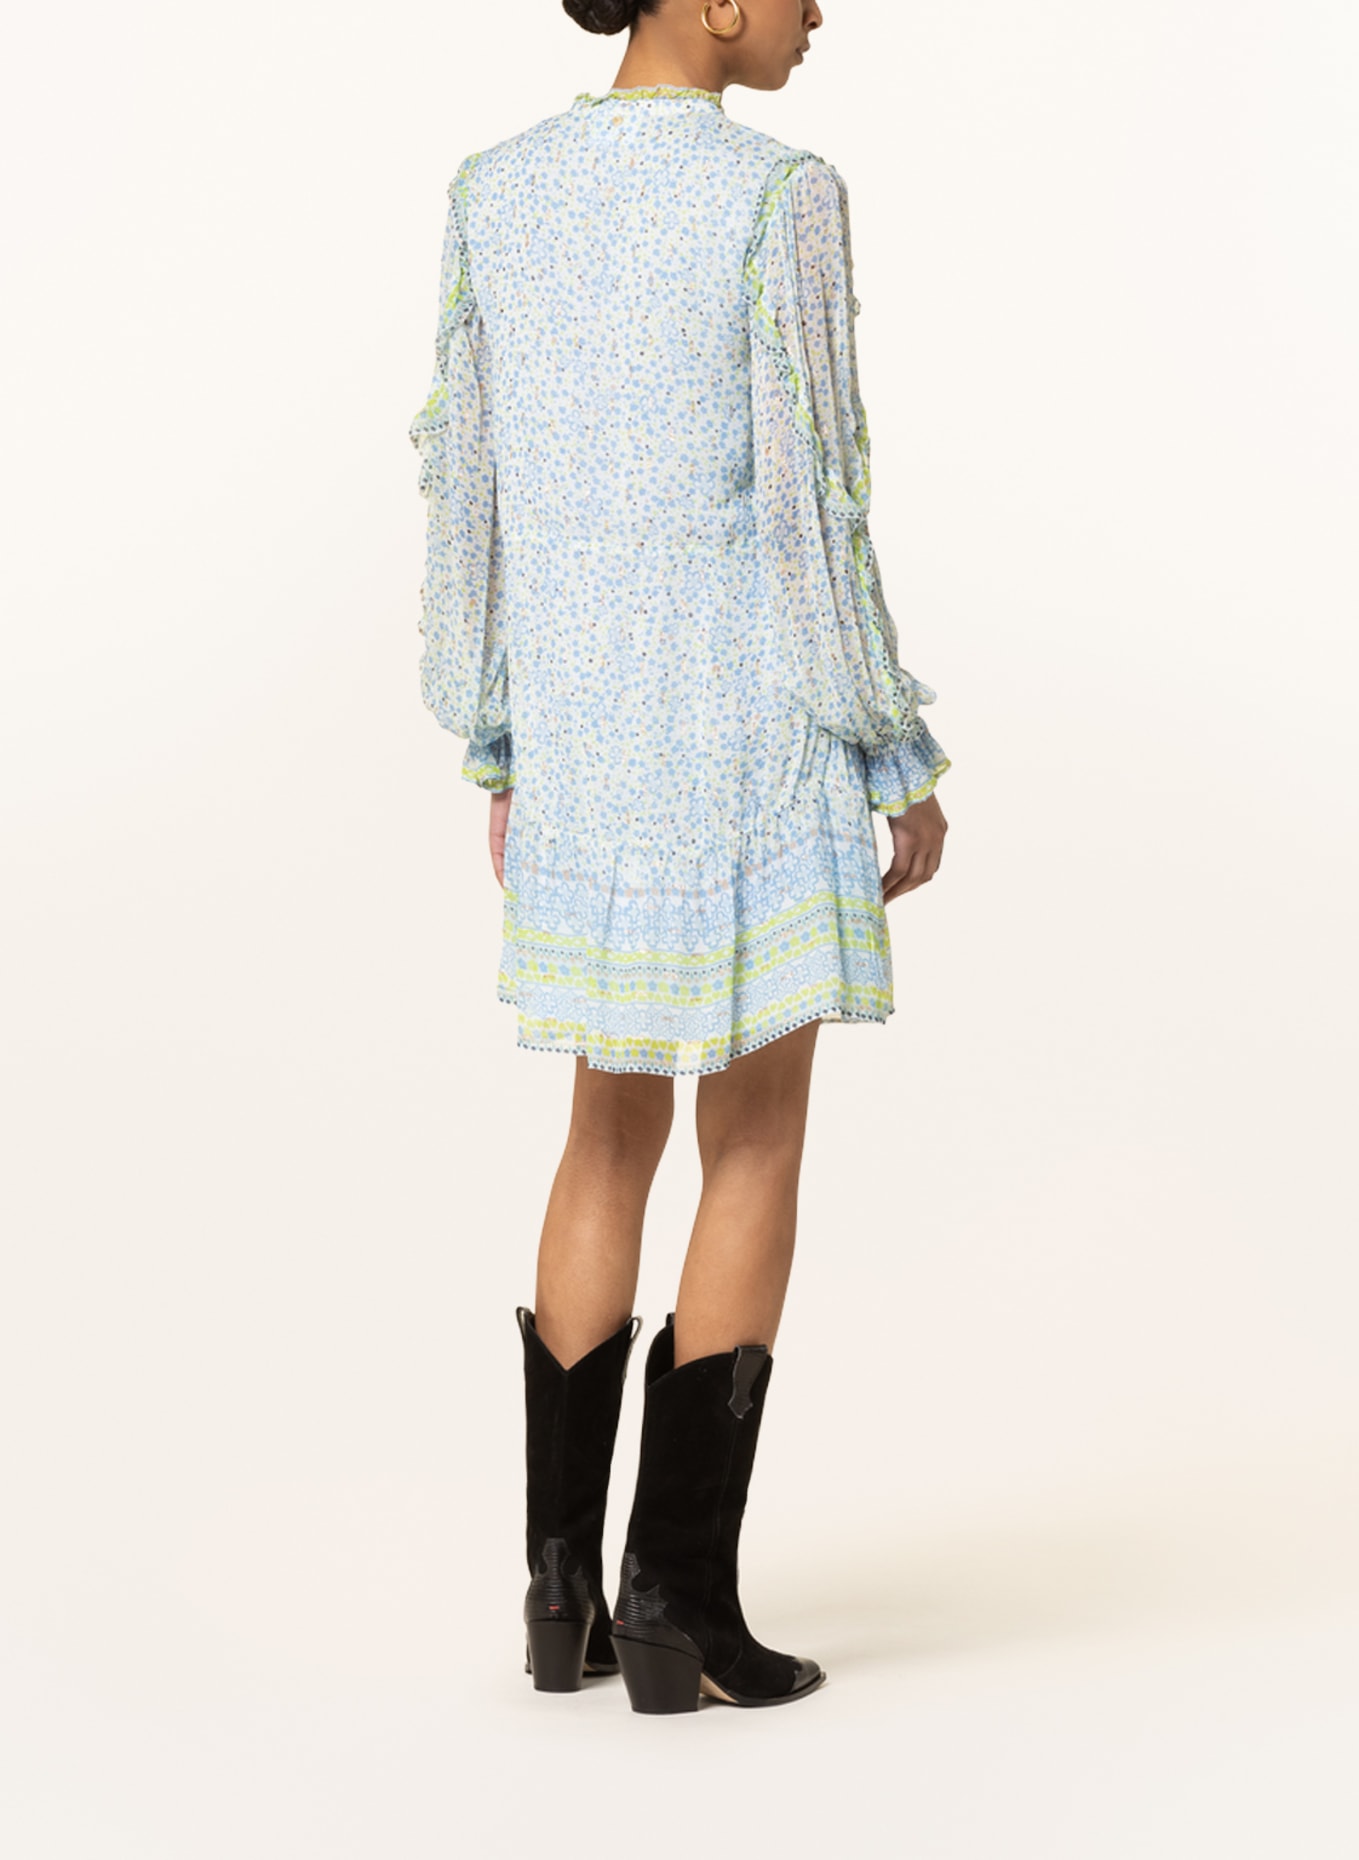 FABIENNE CHAPOT Kleid ADRIENNE mit Glanzgarn und Rüschen, Farbe: WEISS/ HELLBLAU/ HELLGRÜN (Bild 3)